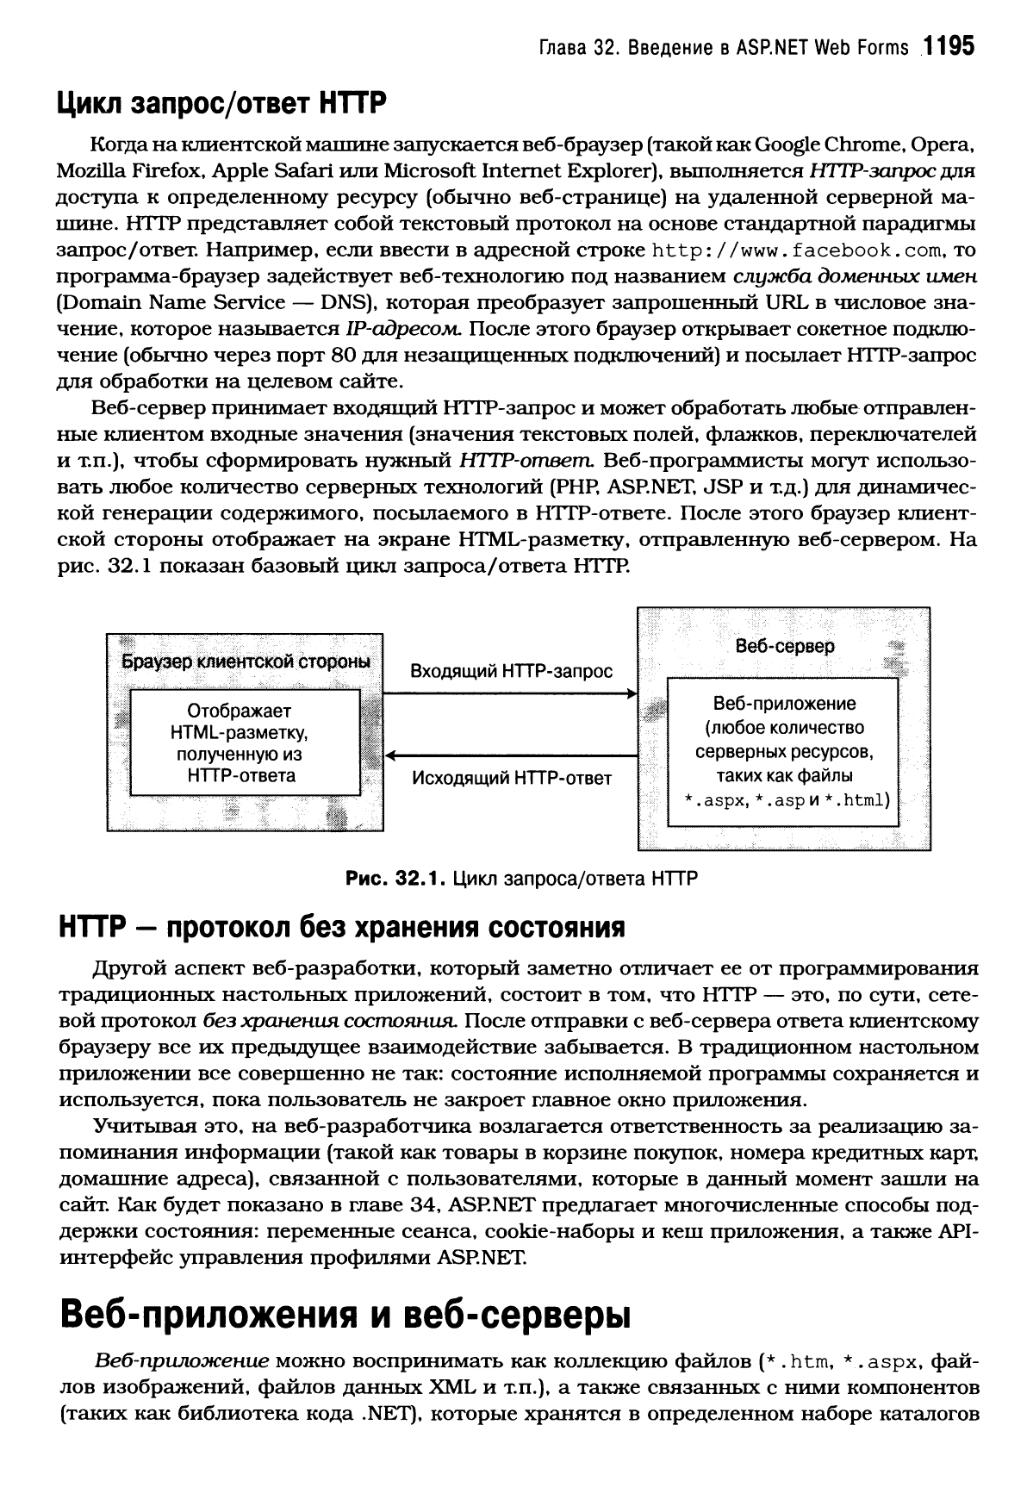 HTTP — протокол без хранения состояния
Веб-приложенияивеб-серверы